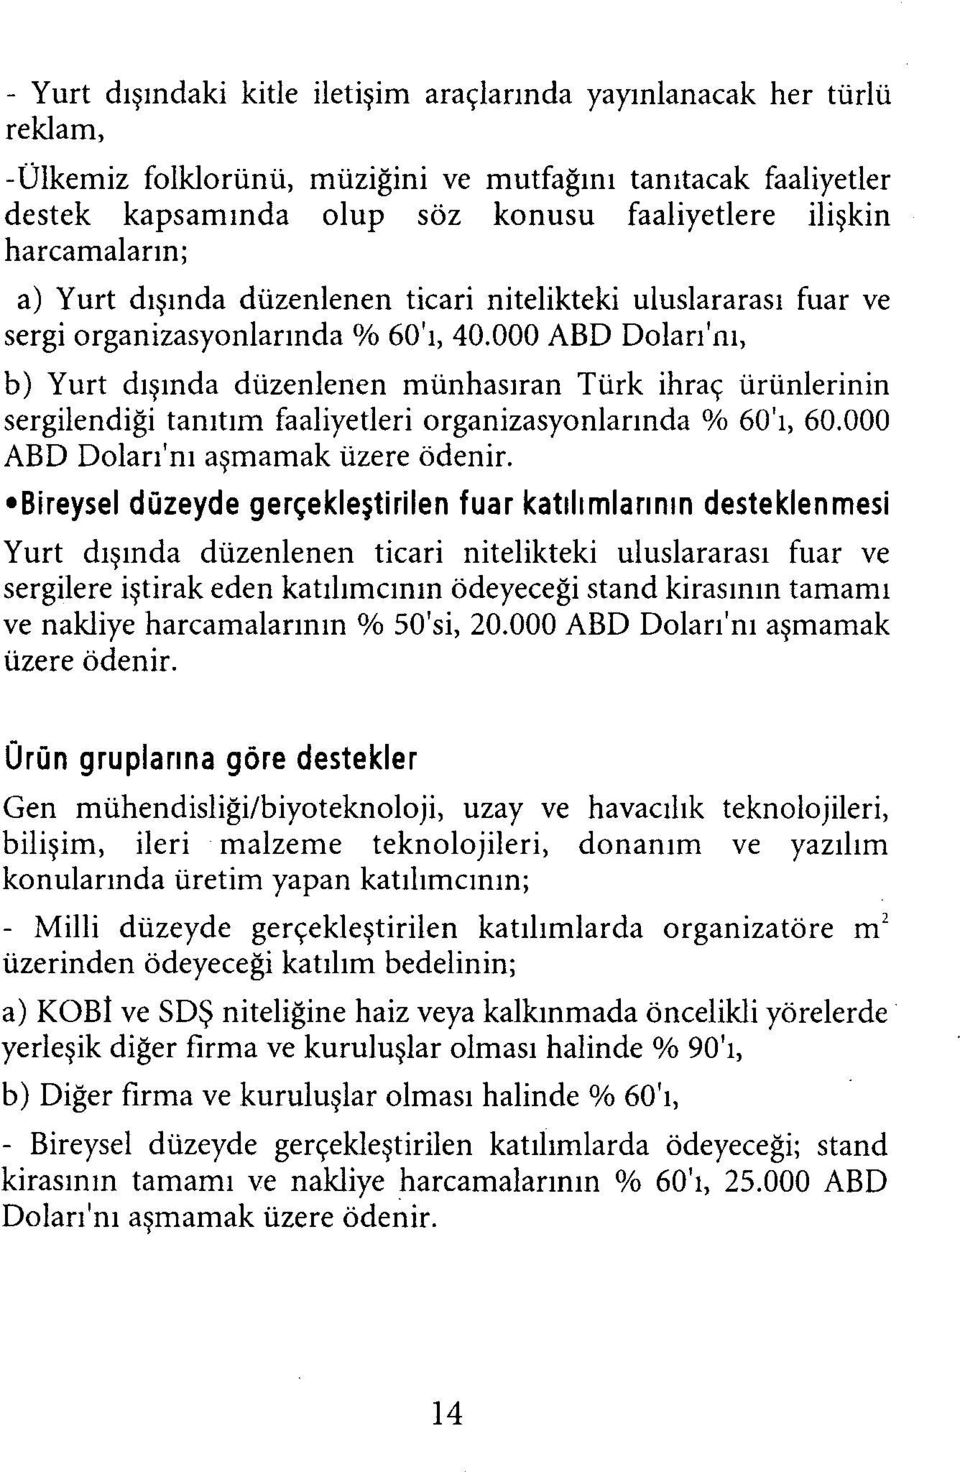 000 ABD Dolarını, b) Yurt dışında düzenlenen münhasıran Türk ihraç ürünlerinin sergilendiği tanıtım faaliyetleri organizasyonlarında % 60'ı, 60.000 ABD Dolarını aşmamak üzere ödenir.